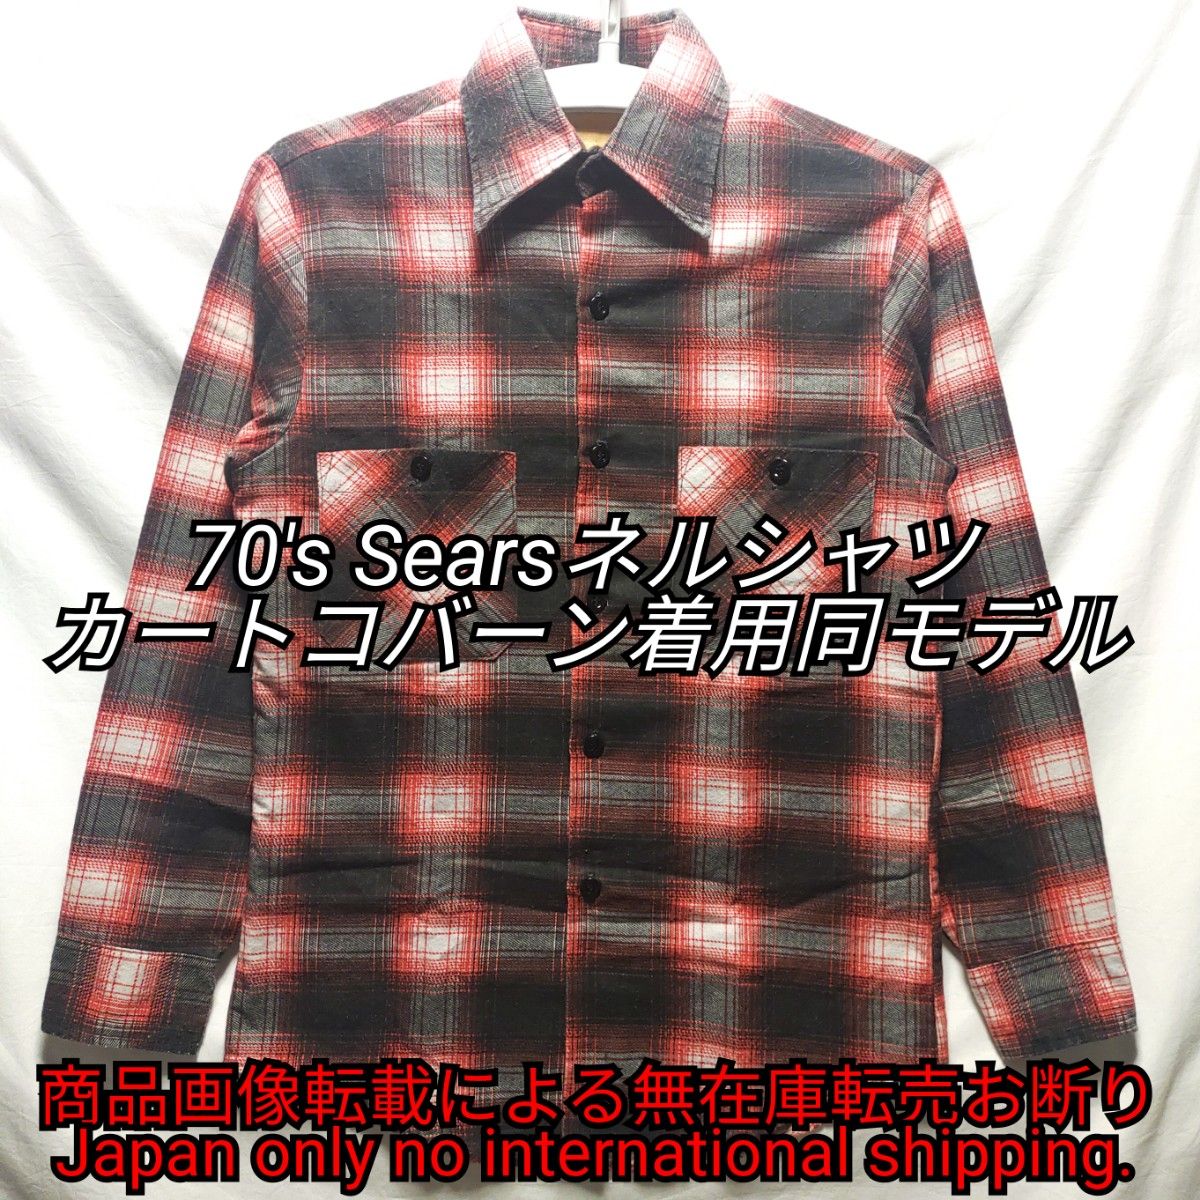 美品 未使用品 70s Sears カートコバーン 着用 同柄 ネルシャツ-